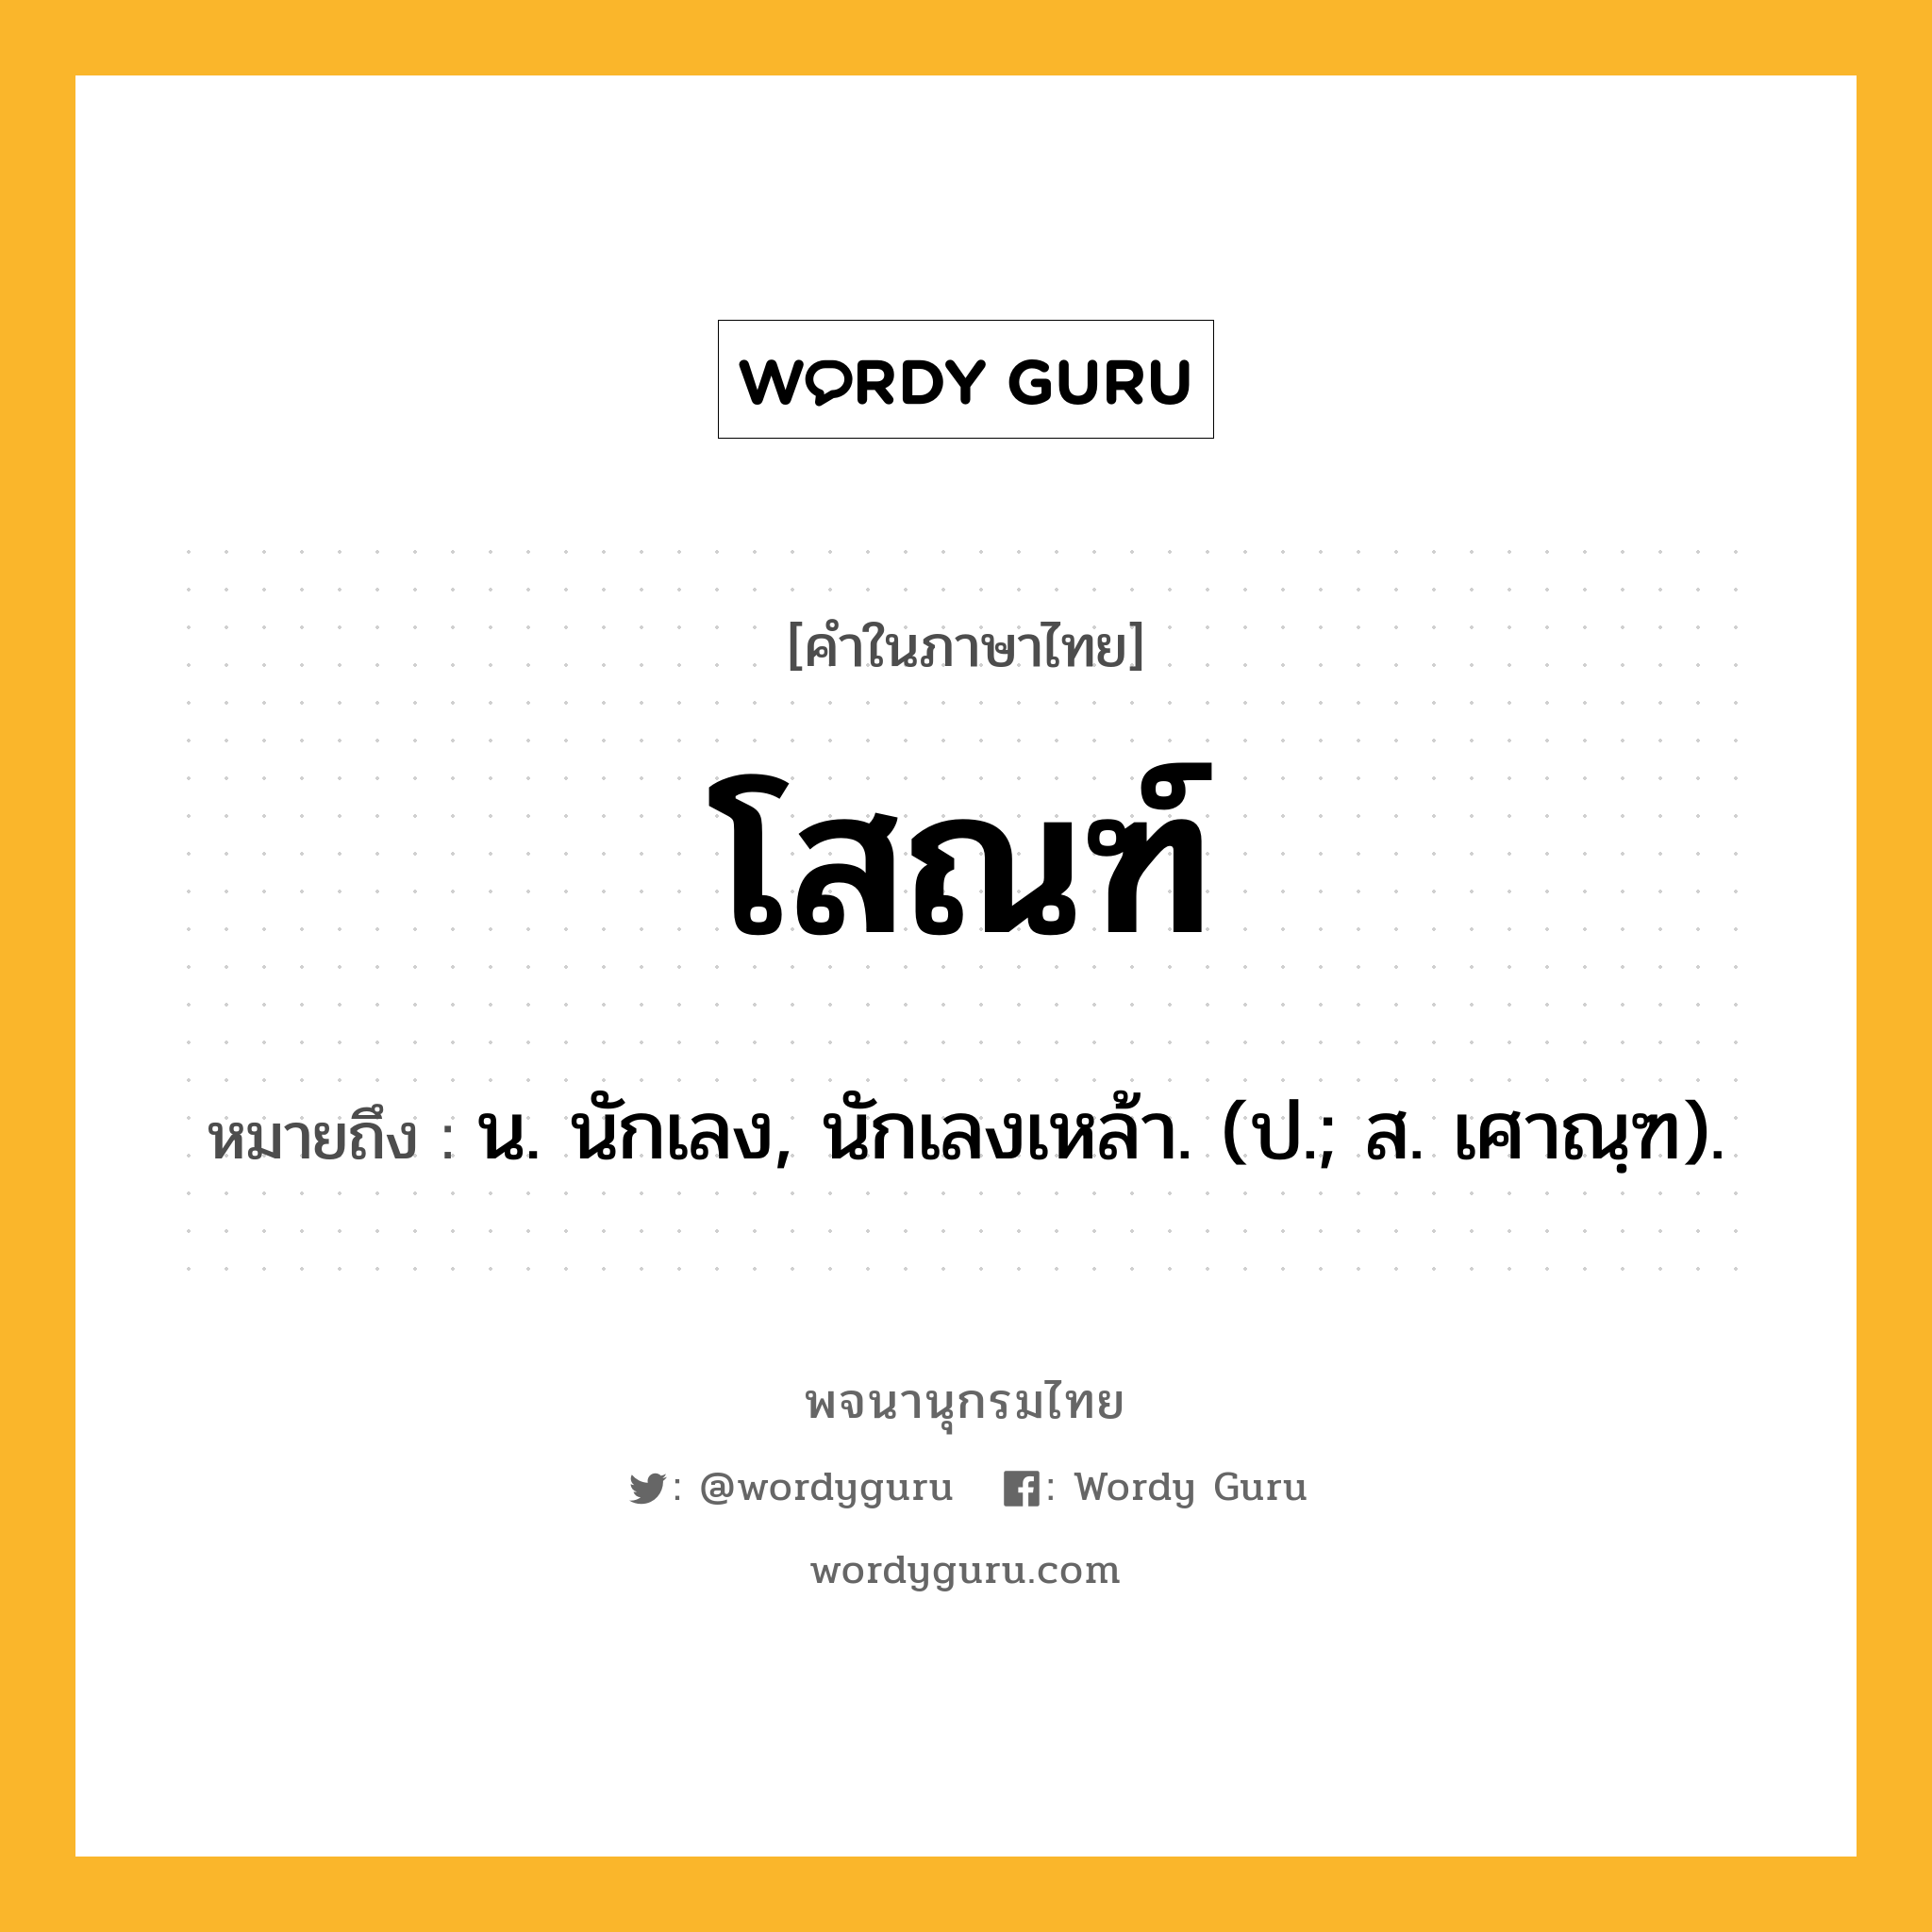 โสณฑ์ ความหมาย หมายถึงอะไร?, คำในภาษาไทย โสณฑ์ หมายถึง น. นักเลง, นักเลงเหล้า. (ป.; ส. เศาณฺฑ).